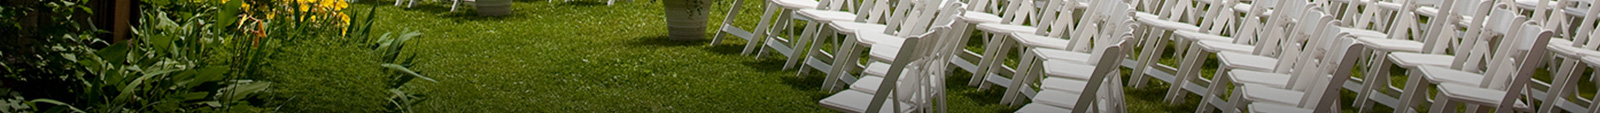 chair rentals - Ontario Tent & Event Rentals